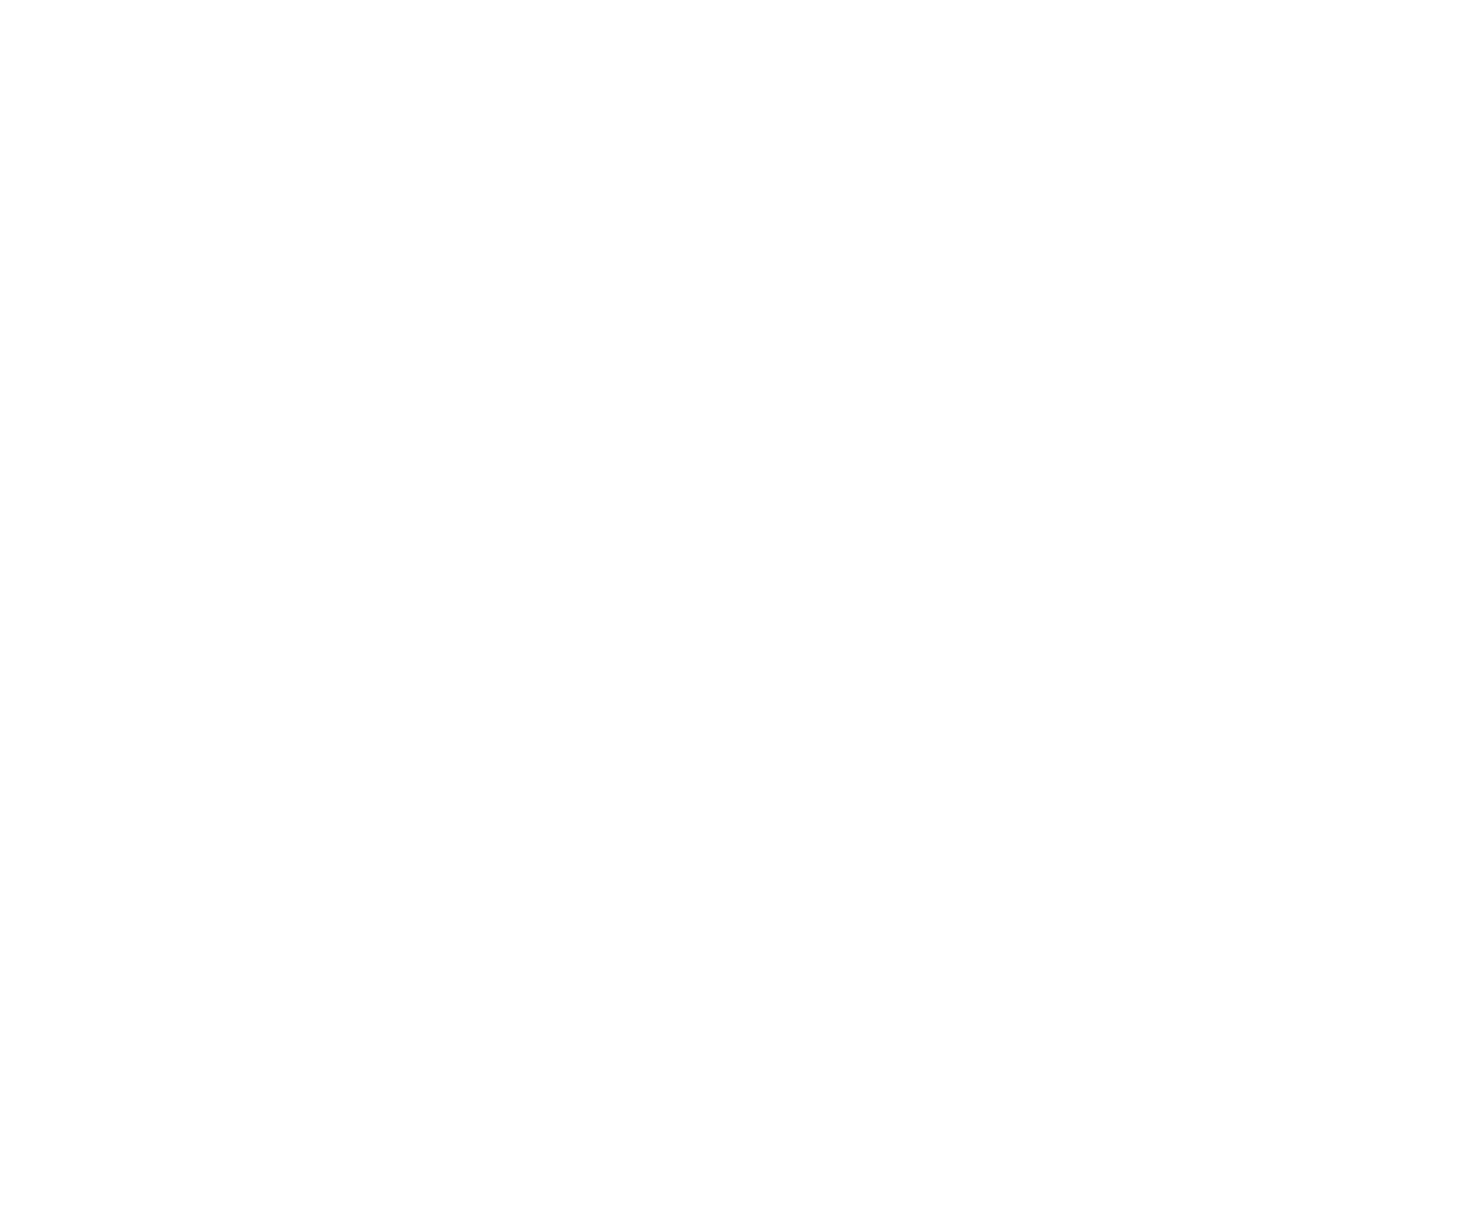 Brown & Bills Architects